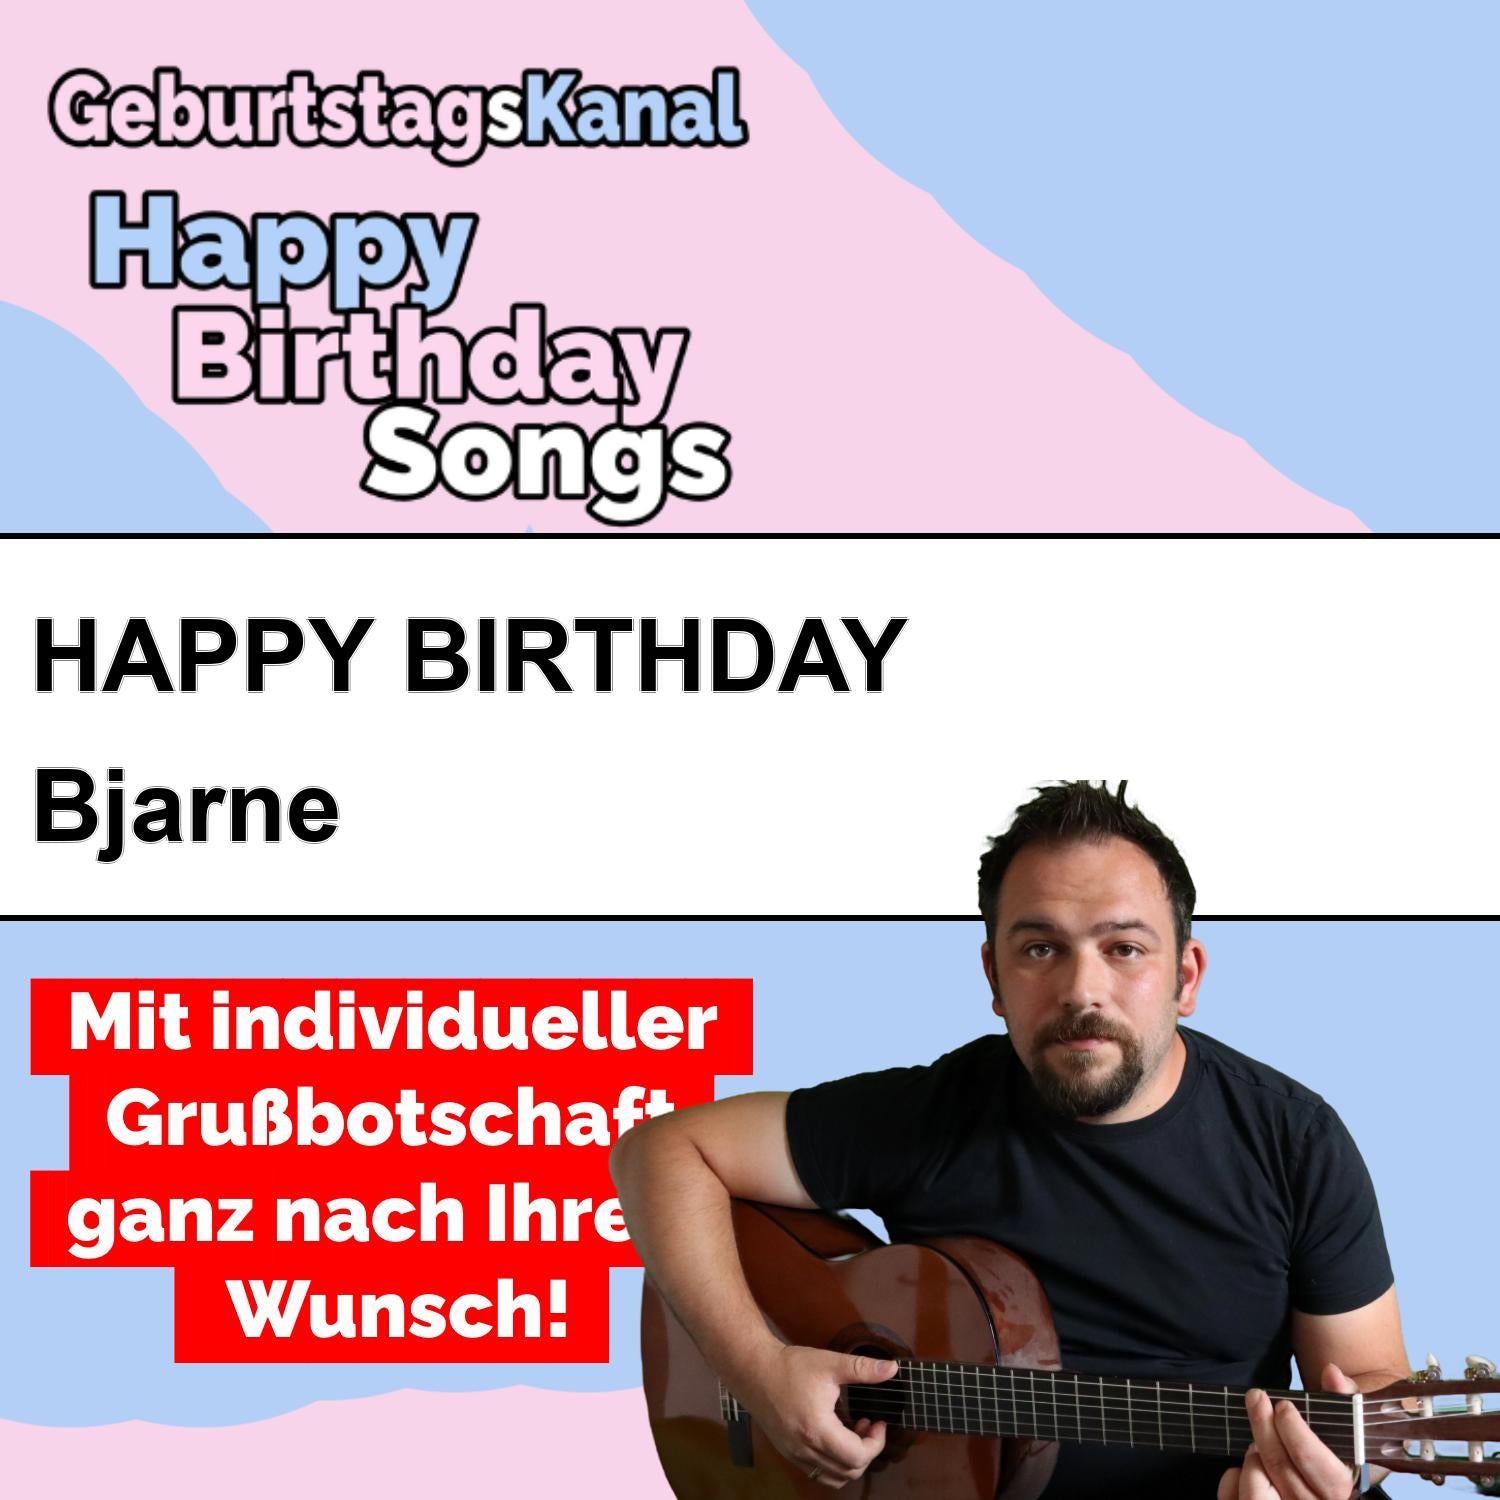 Produktbild Happy Birthday to you Bjarne mit Wunschgrußbotschaft